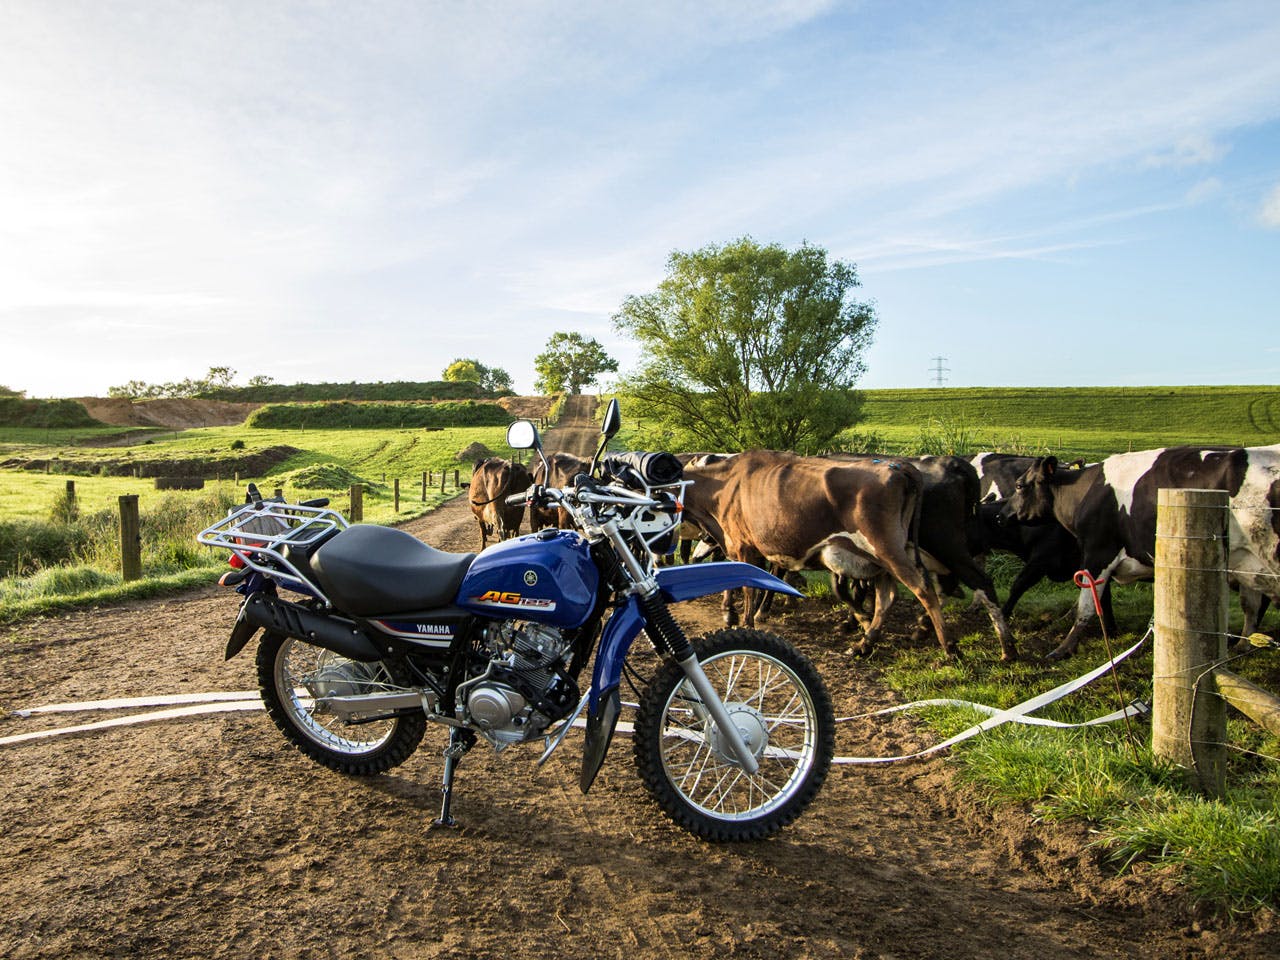 Yamaha AG125 motorcycle on a farm